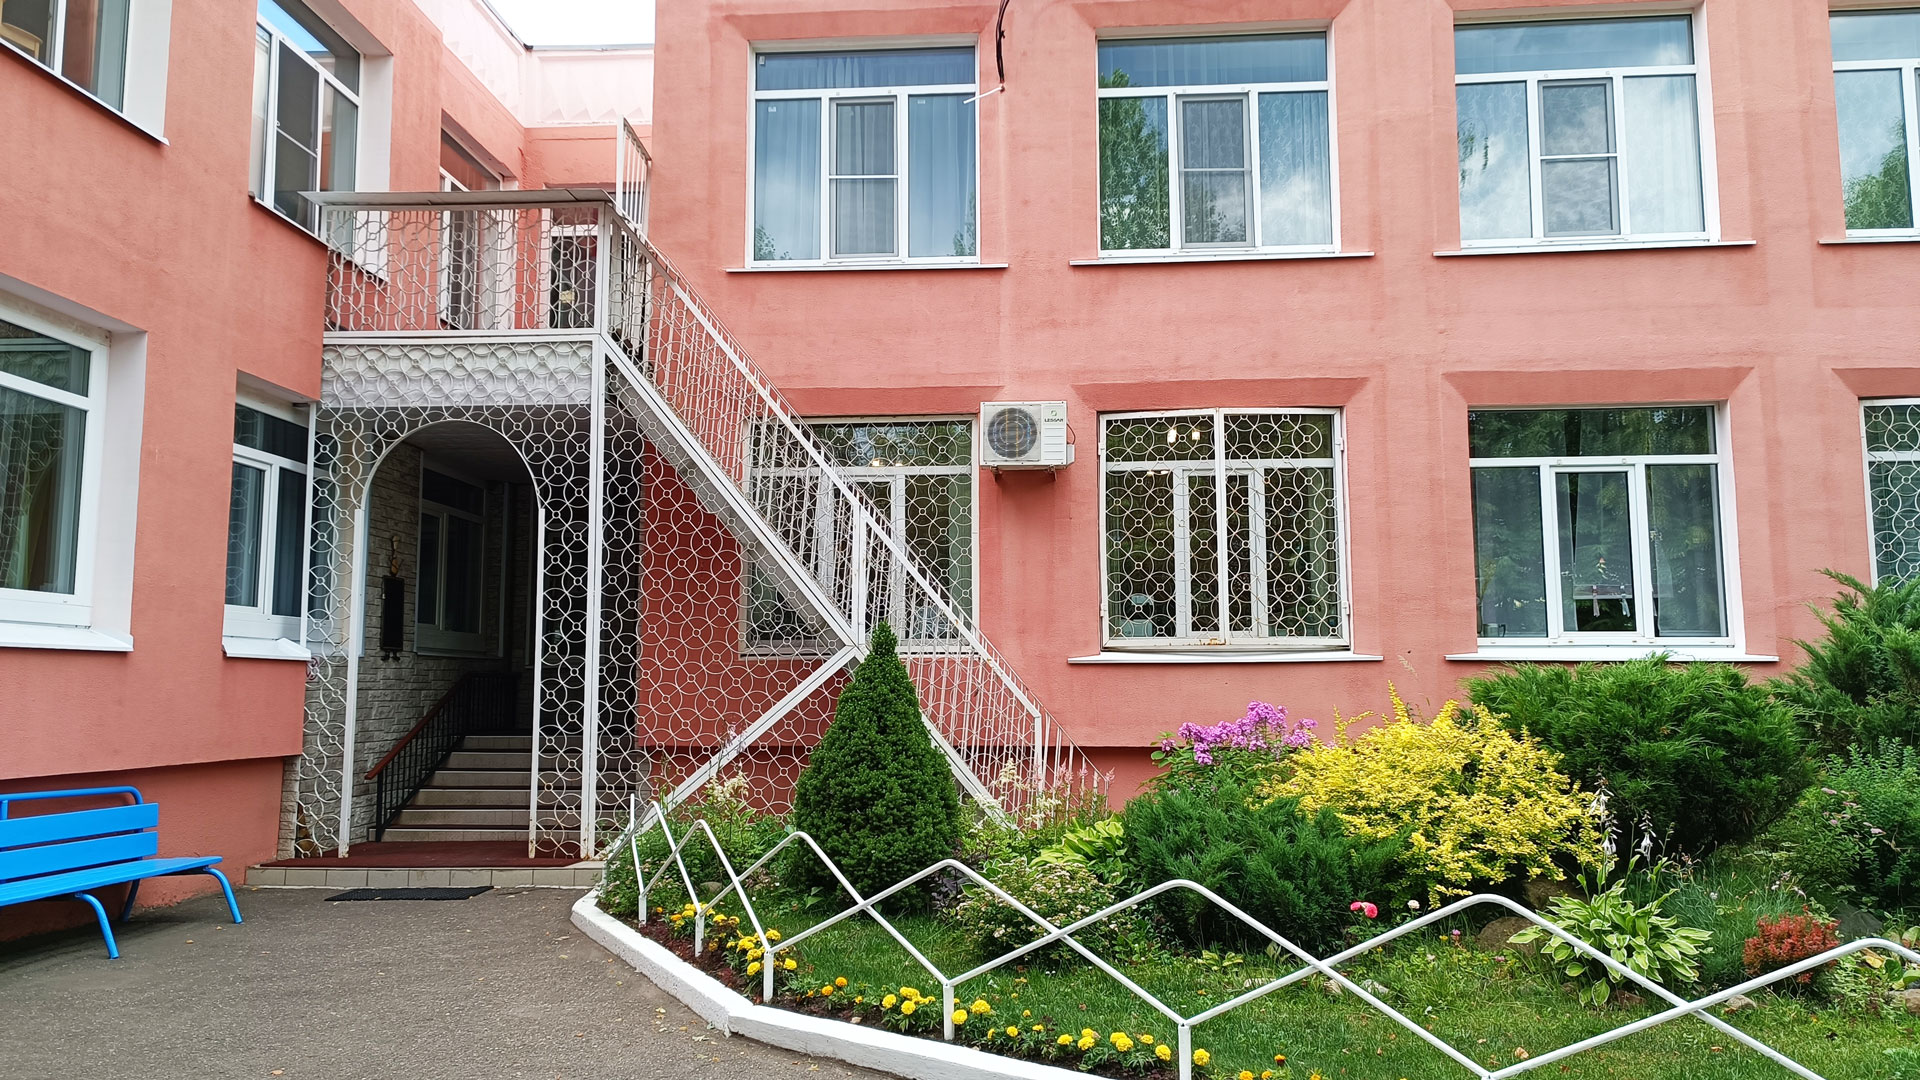 Начальная школа – детский сад 115 Ярославль: общий вид здания.